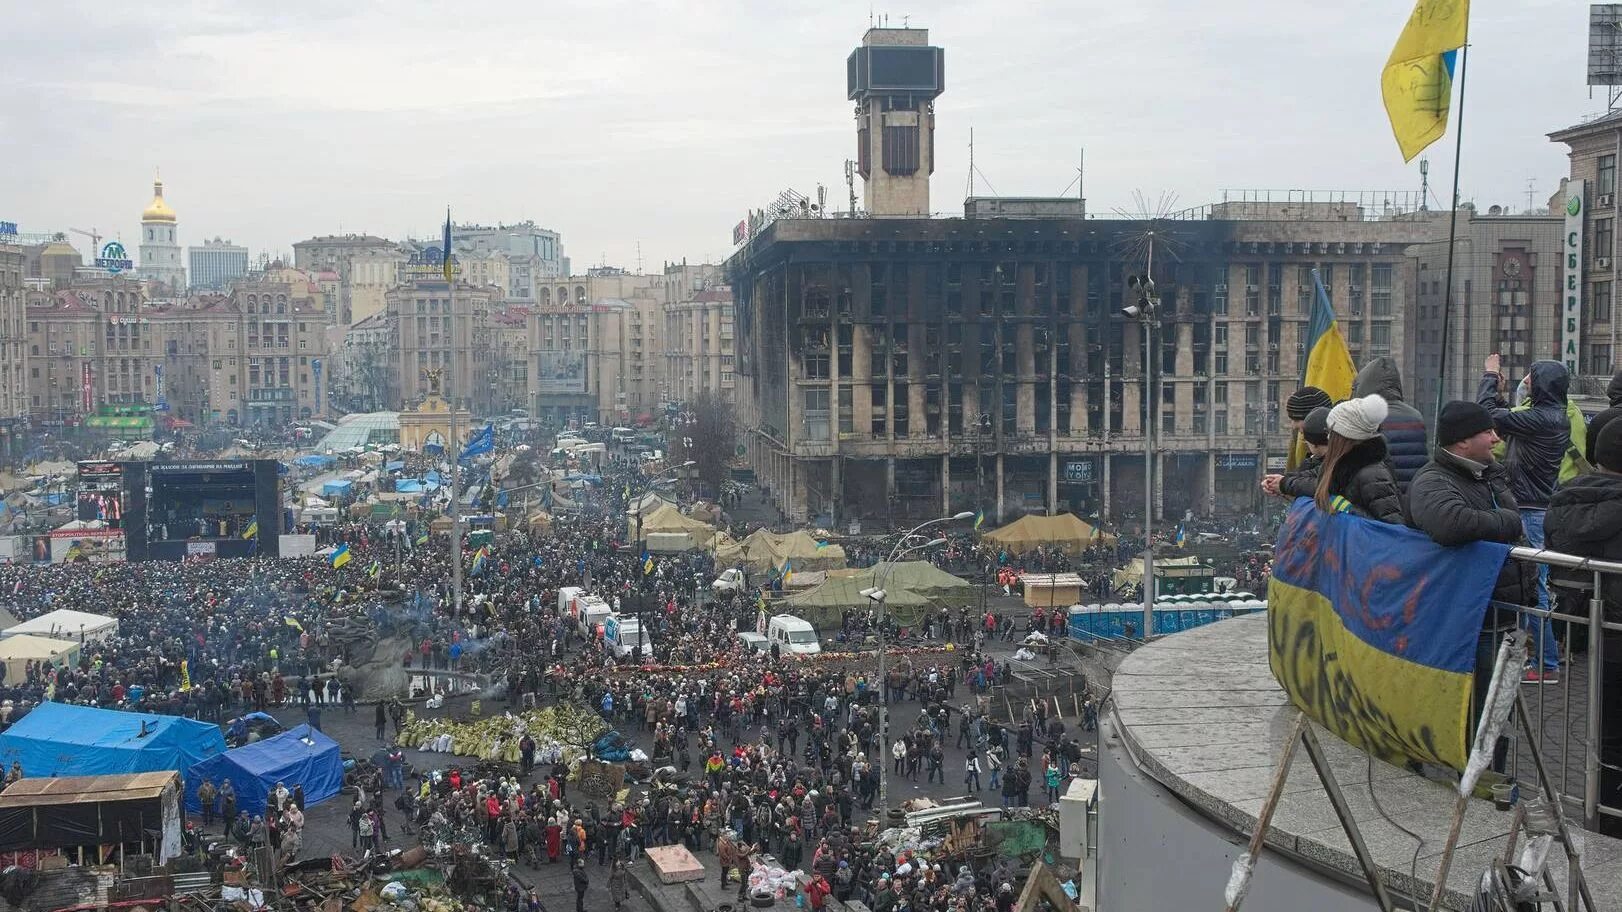 Площадь независимости Киев 2014. Майдан 2014 площадь независимости. Киев Майдан 2014. Киев площадь независимости Евромайдан. Майдан стоит